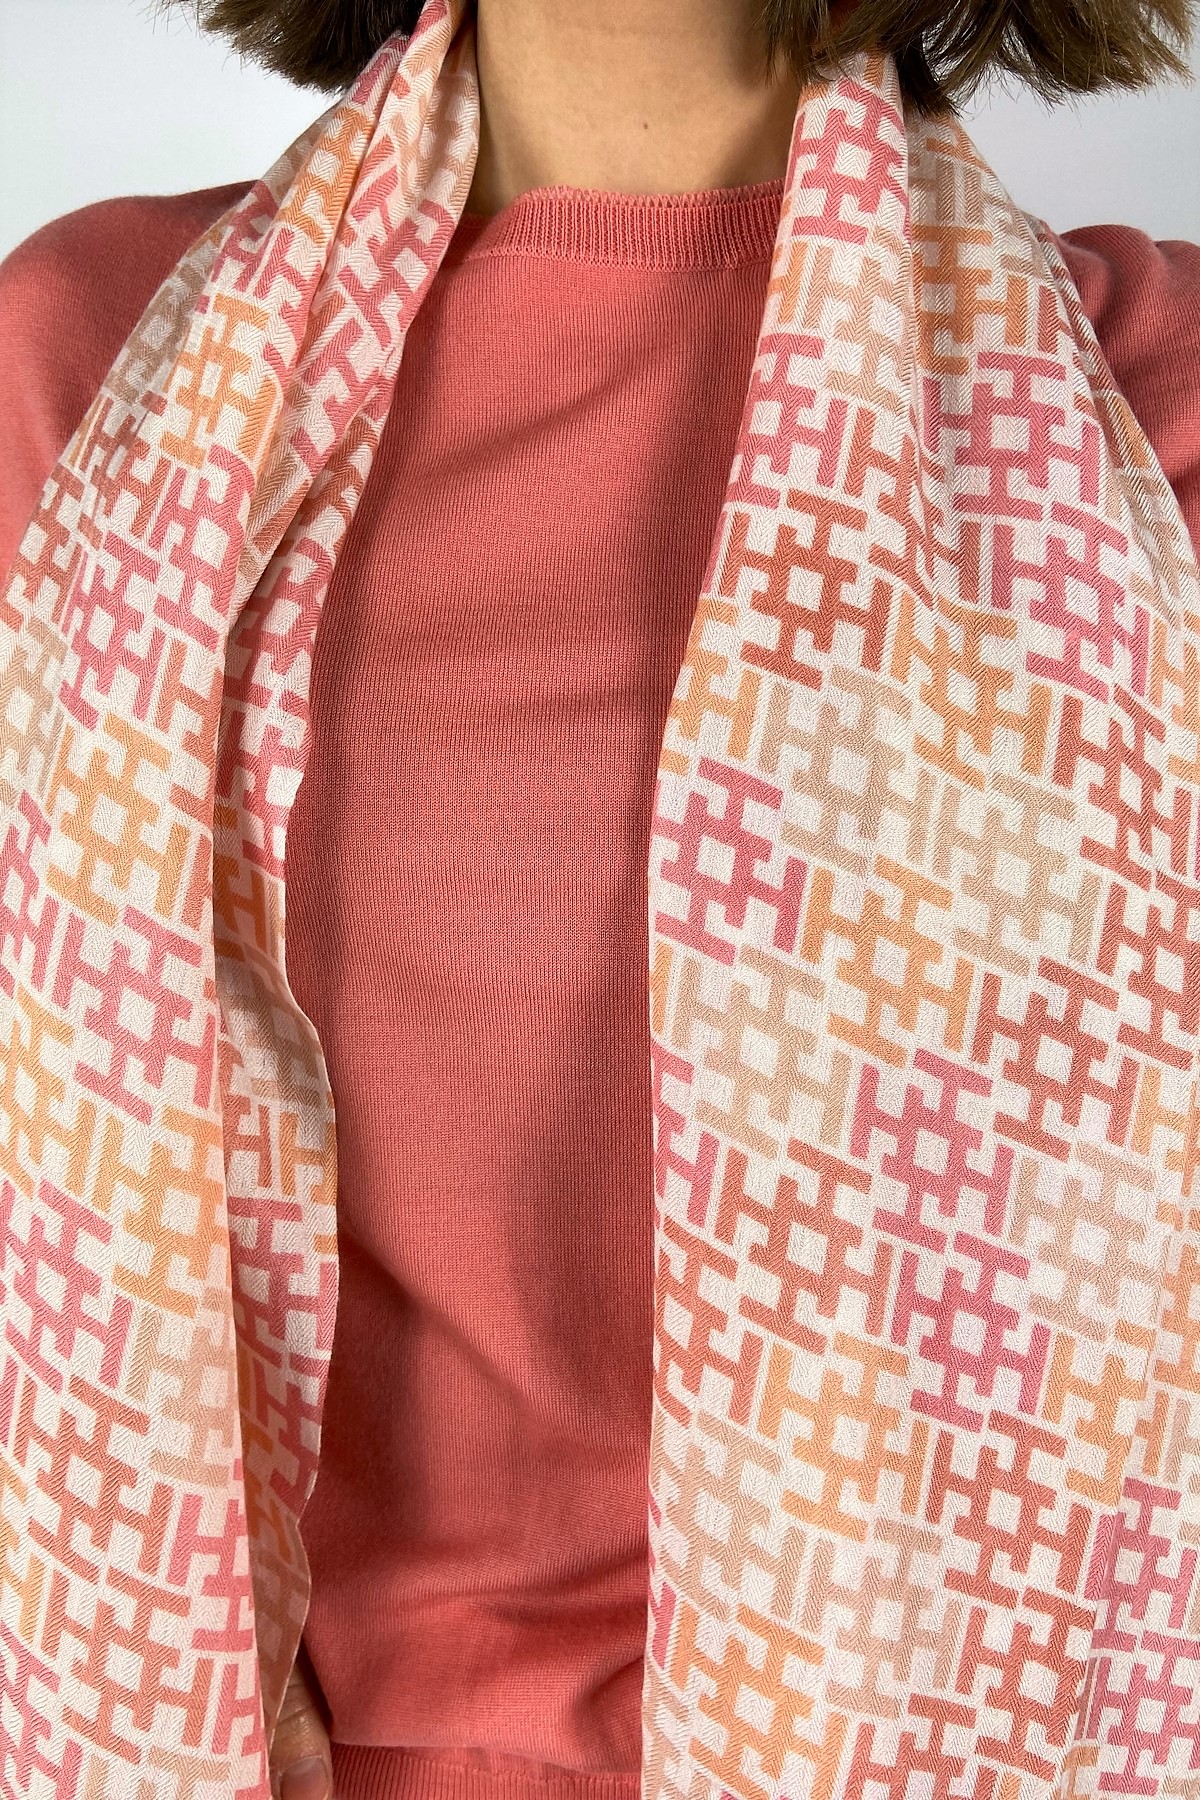 Sjaal H print in de kleur roze oranje van het merk Hemisphere